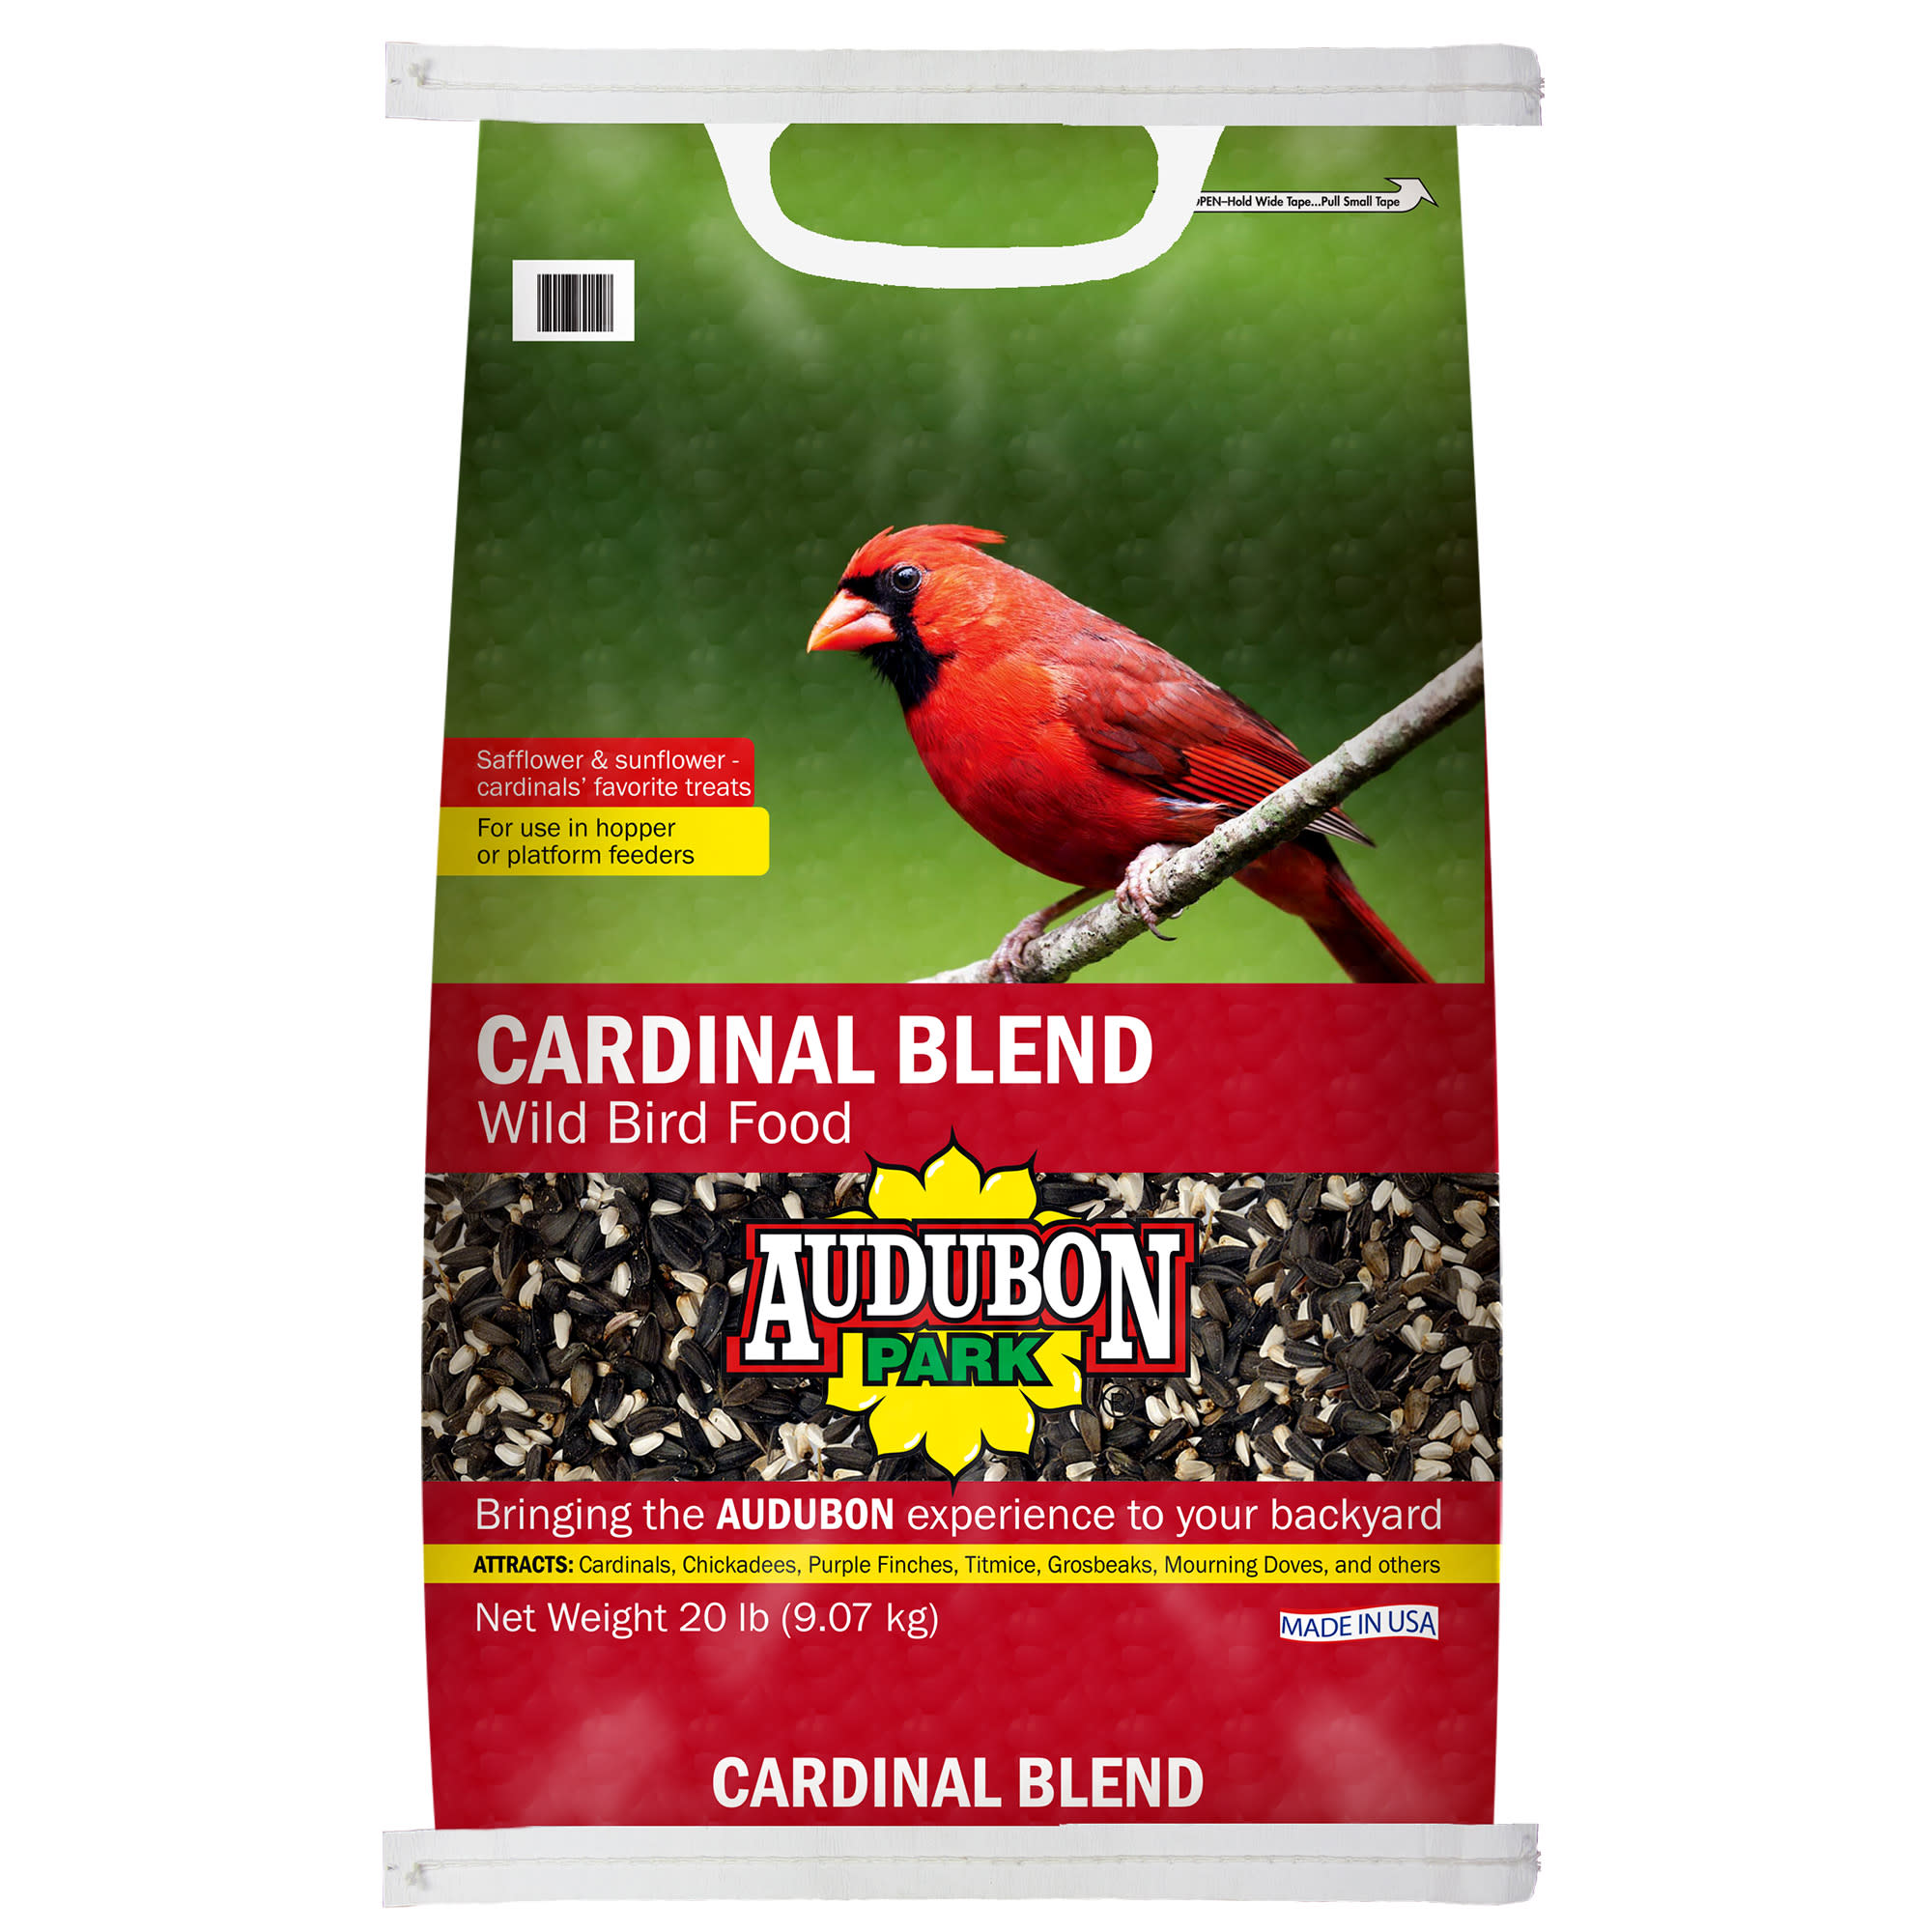 AUDUBON PARK Wild Bird Food, 20 lbs.